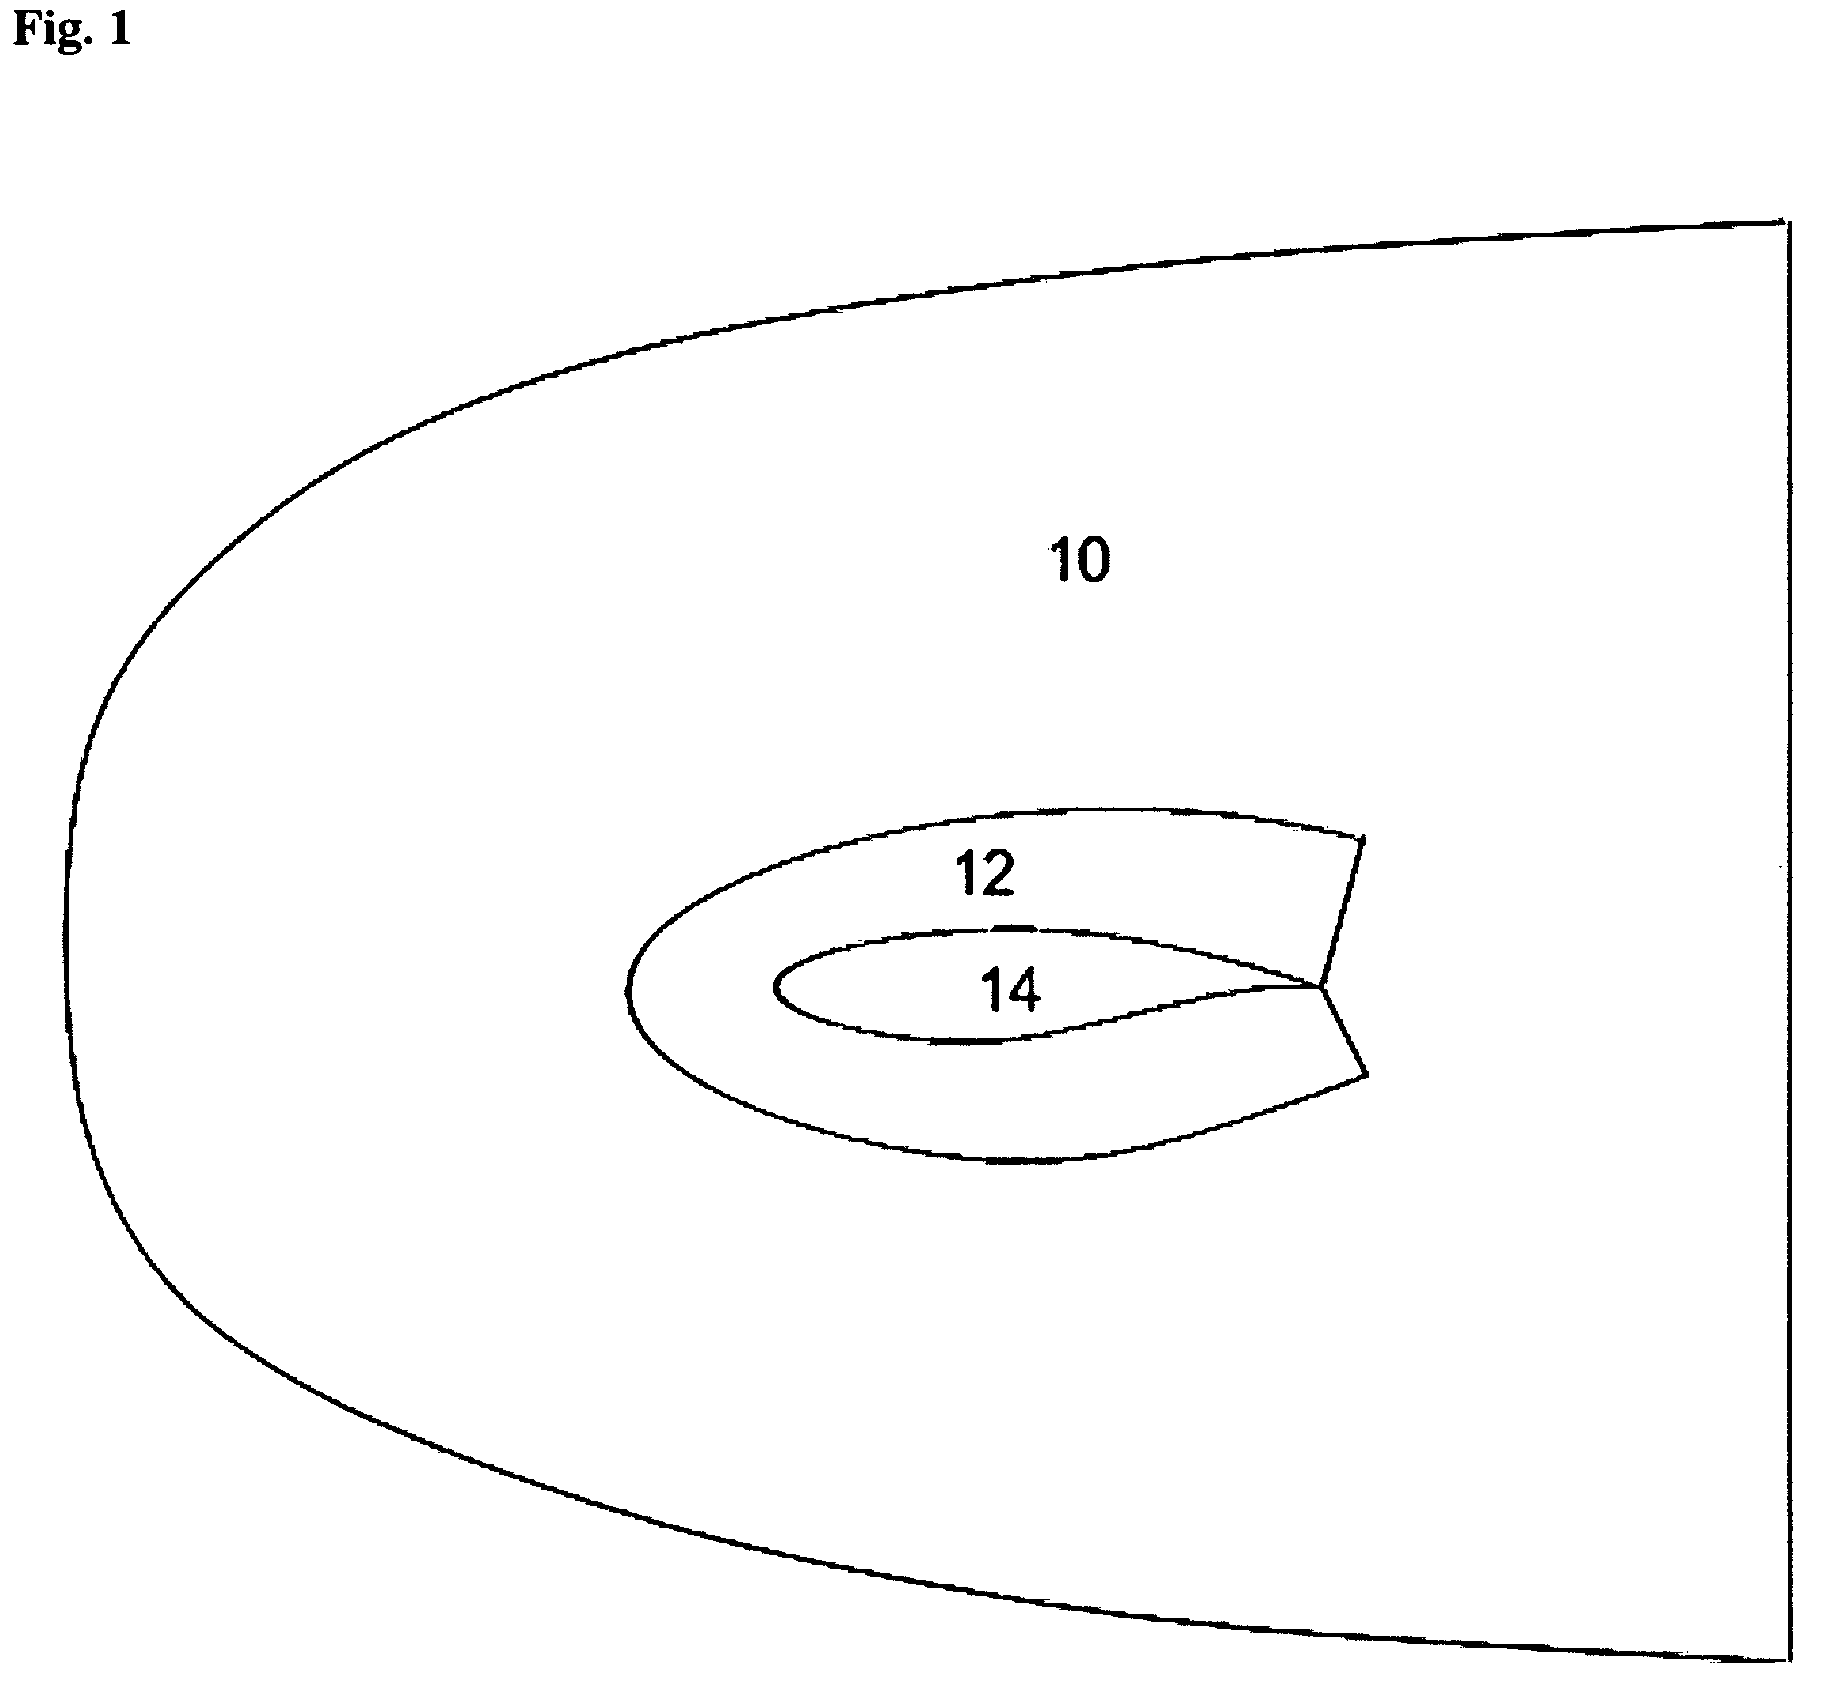 Method for computing turbulent flow using a near-wall eddy-viscosity formulation